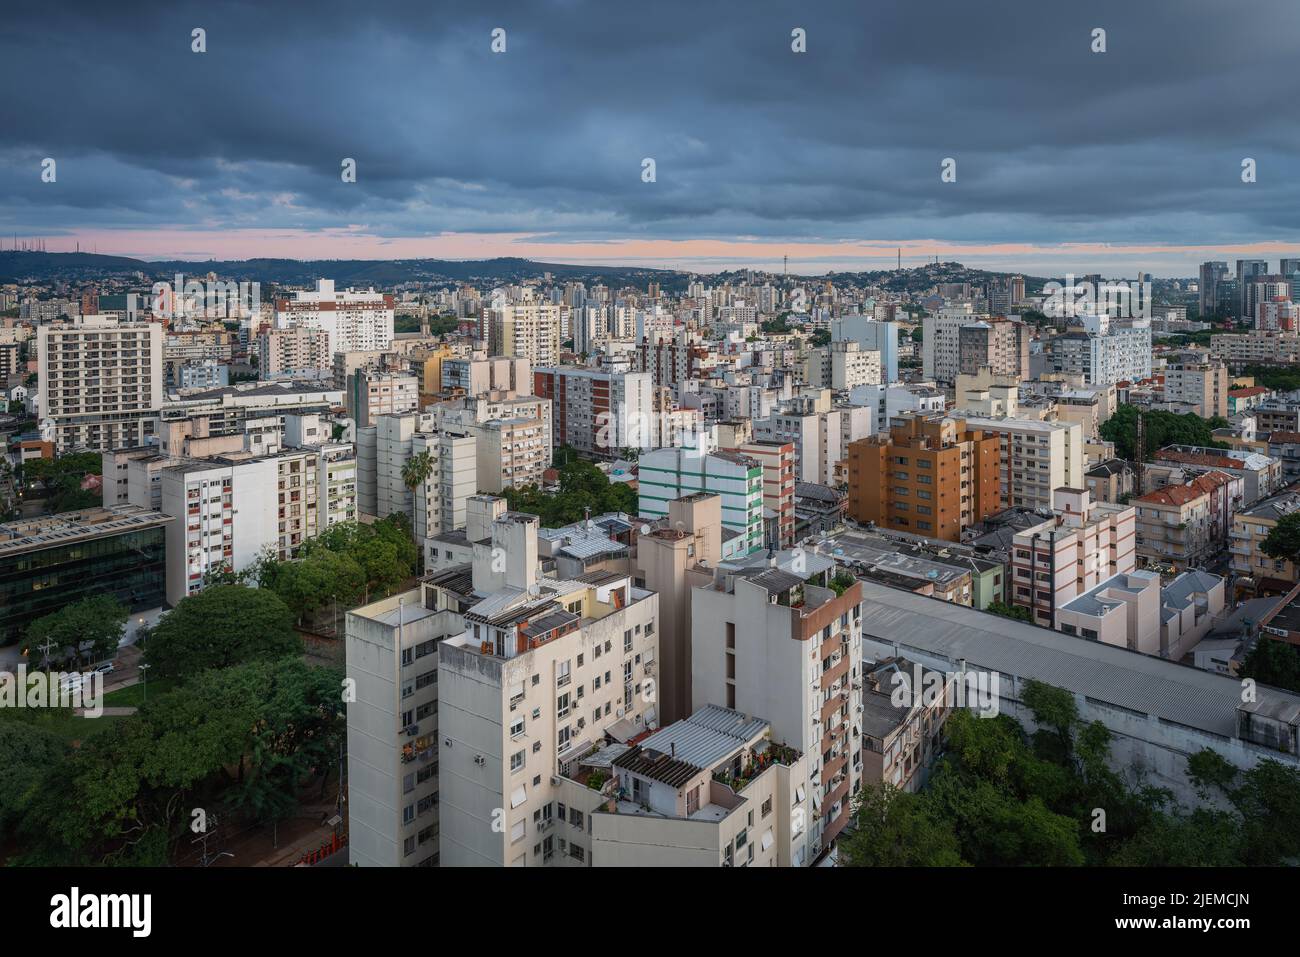 Aerial view of Porto Alegre City and Cidade Baixa Neighborhood - Porto Alegre, Rio Grande do Sul, Brazil Stock Photo